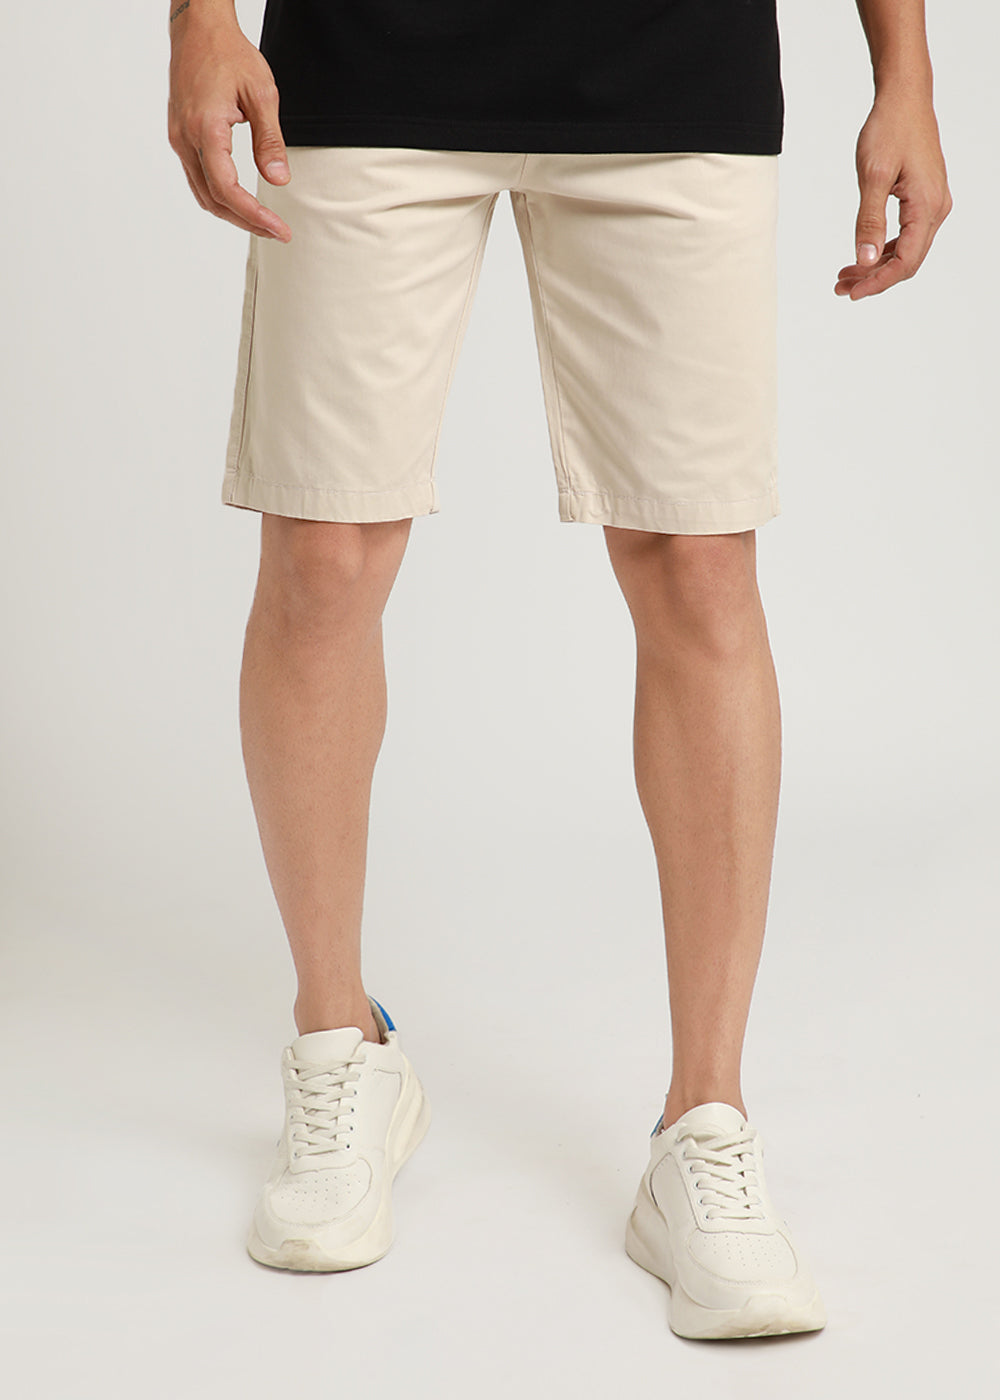 Ivory Cream Shorts